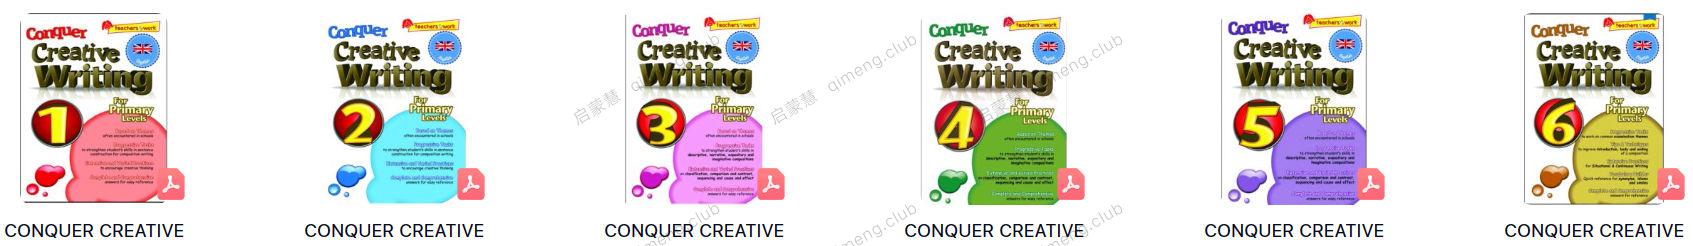 新加坡Conquer系列的写作教材《Creative Writing》6册，适合国内的孩子，像英语母语一样学写作